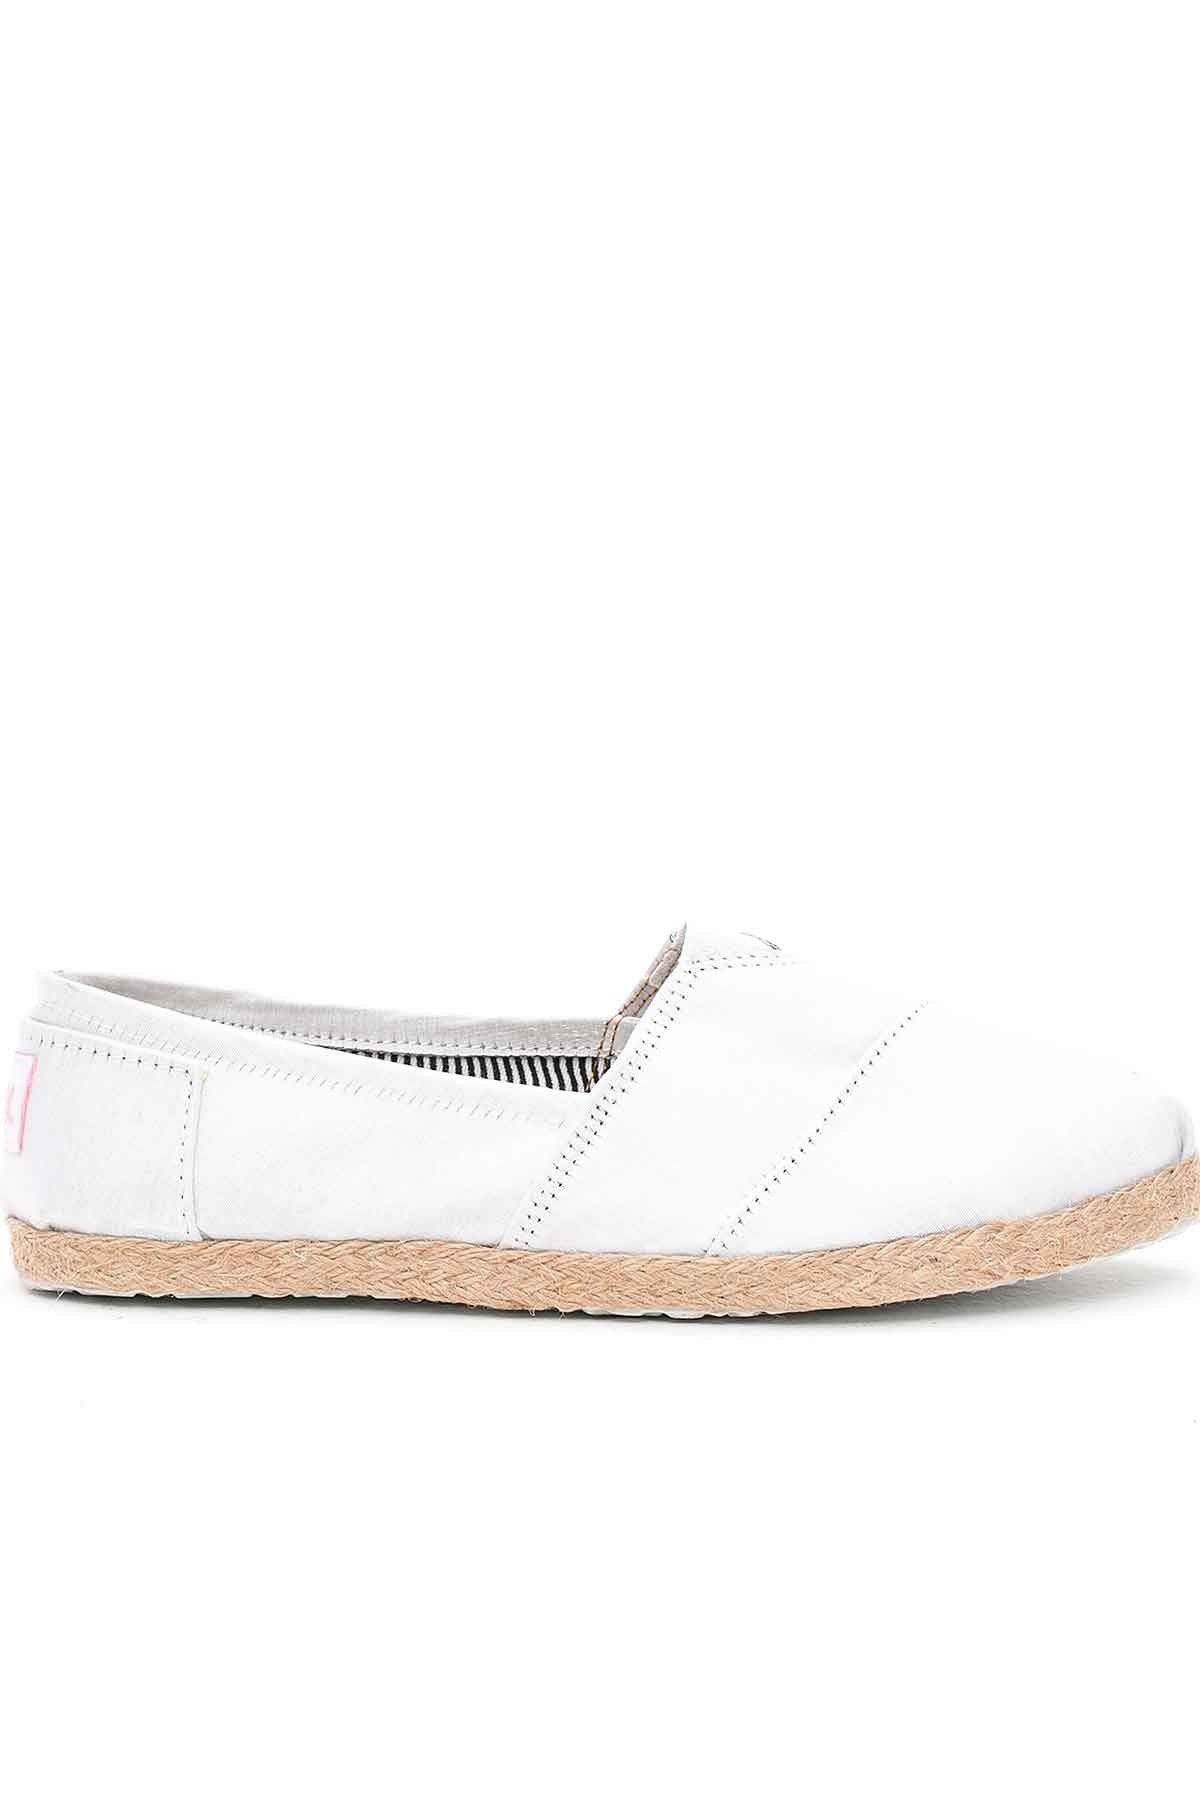 PNK Beyaz Kadın Ayakkabı 660-8-1100